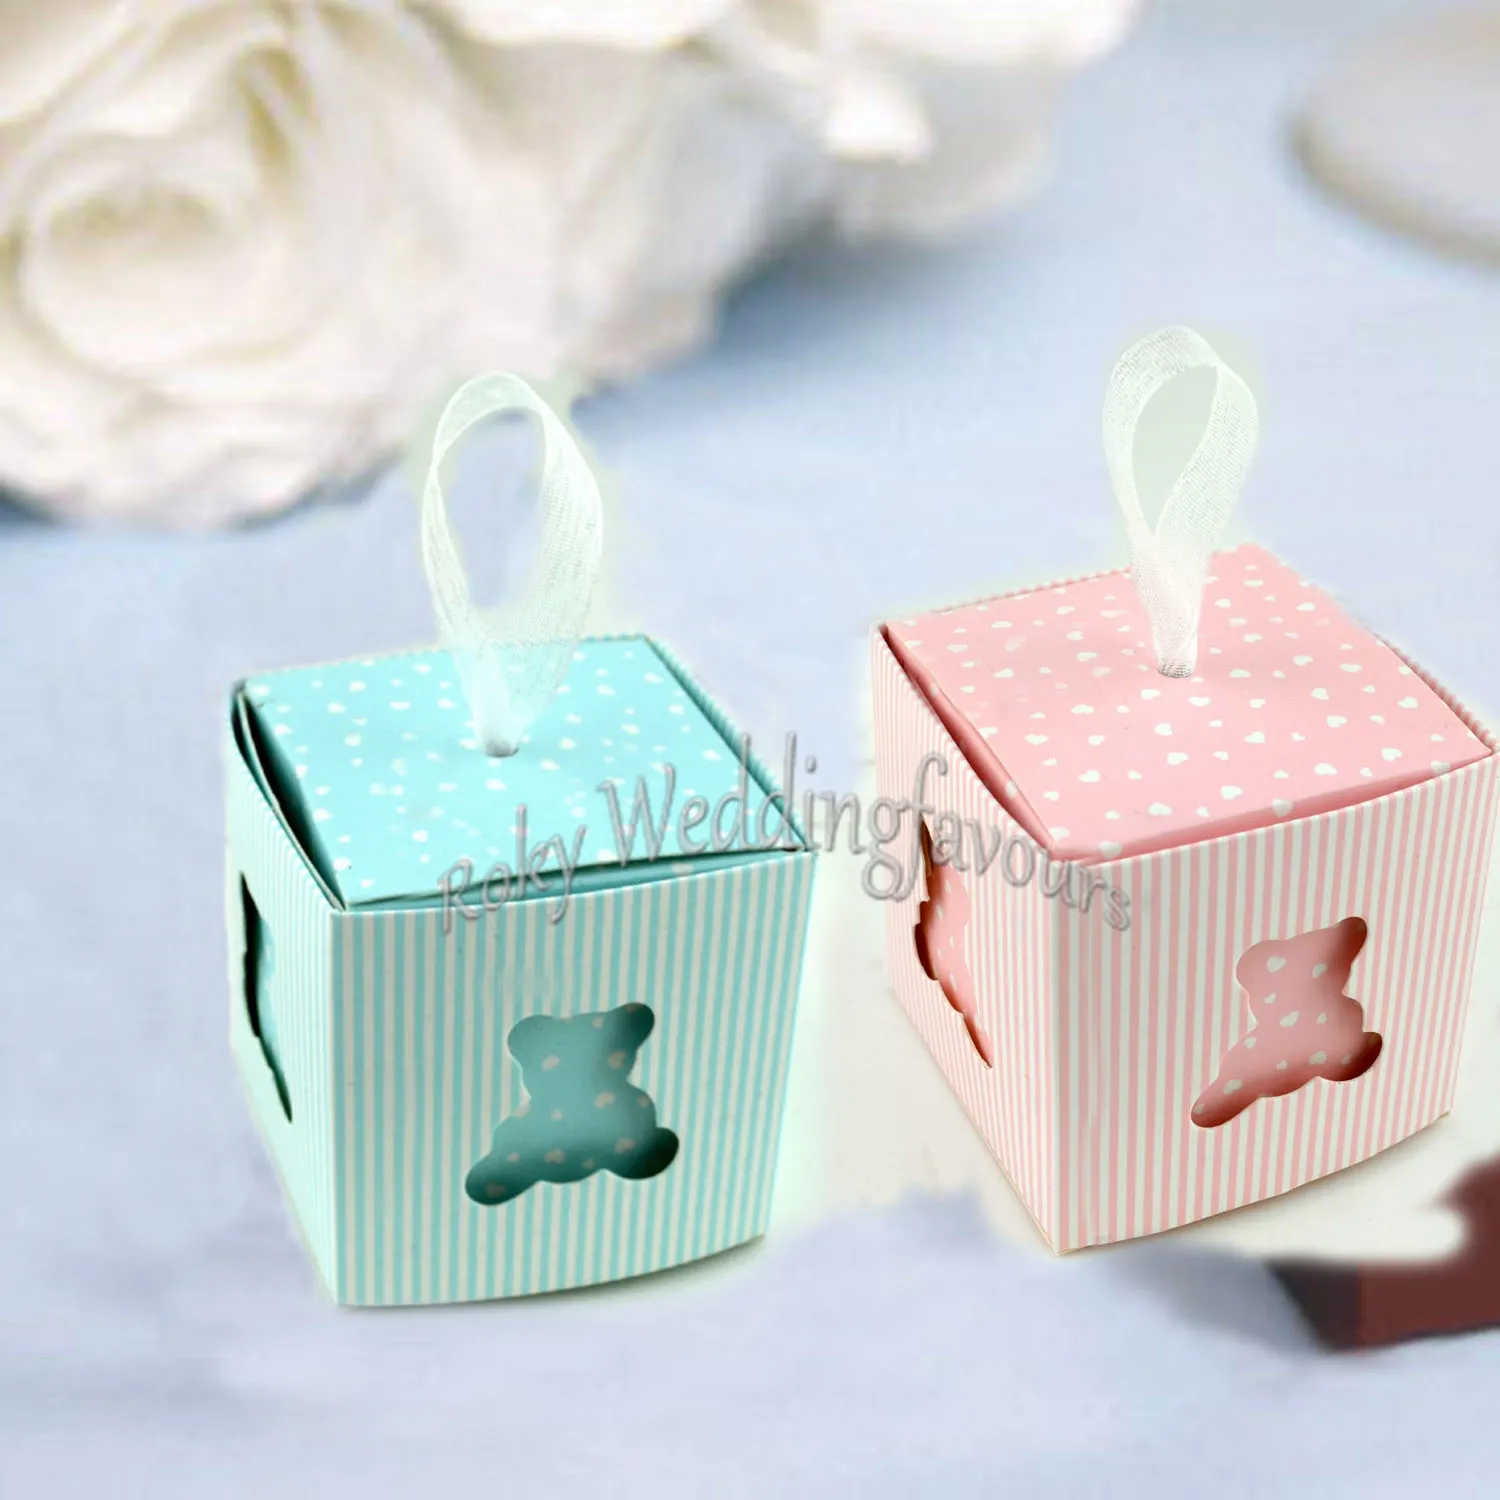 Синий розовый маленький плюшевый мишка пользу коробки душа ребенка Крещение партии конфеты коробка крестины детские день рождения партии поставки